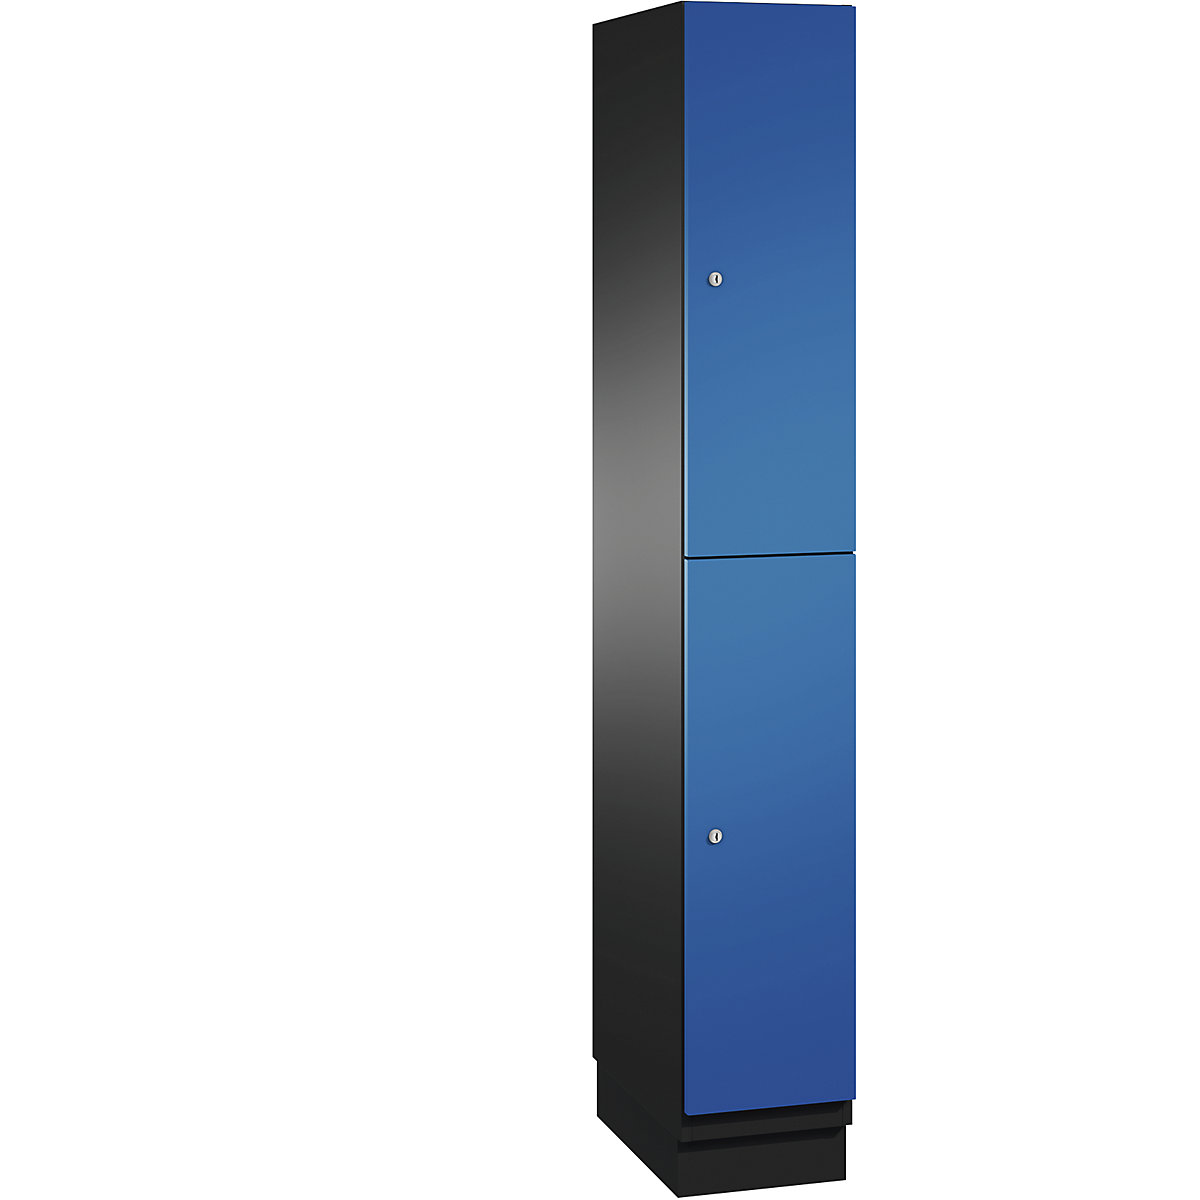 C+P – Skříň s boxy CAMBIO s tyčí na oděvy, 2 boxy, korpus černošedý / dveře hořcově modré, šířka 300 mm